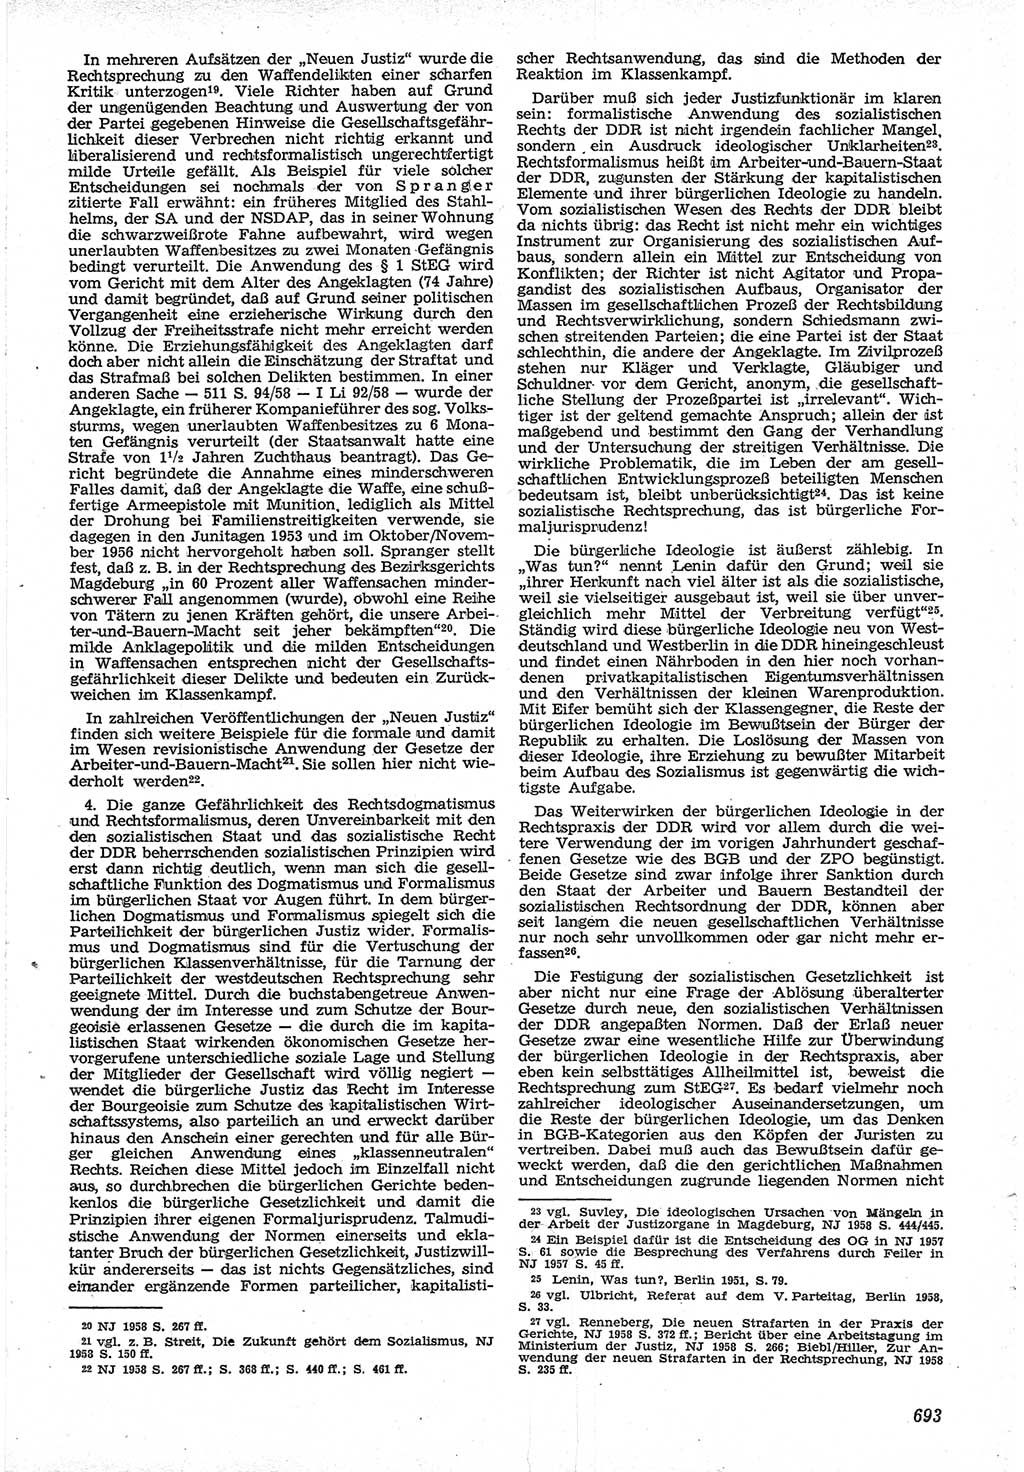 Neue Justiz (NJ), Zeitschrift für Recht und Rechtswissenschaft [Deutsche Demokratische Republik (DDR)], 12. Jahrgang 1958, Seite 693 (NJ DDR 1958, S. 693)